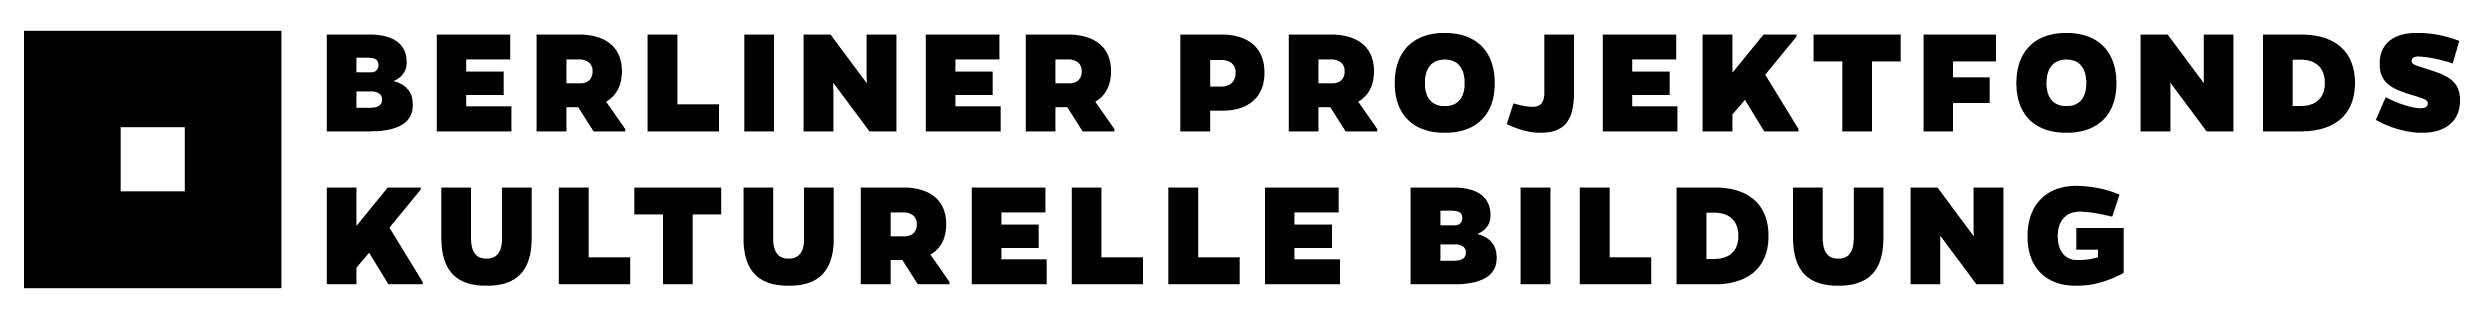 https://projektfonds.kulturprojekte-berlin.de/uploads/downloads/kpb-logo_projektfonds-kulturelle-bildung_pf.jpg